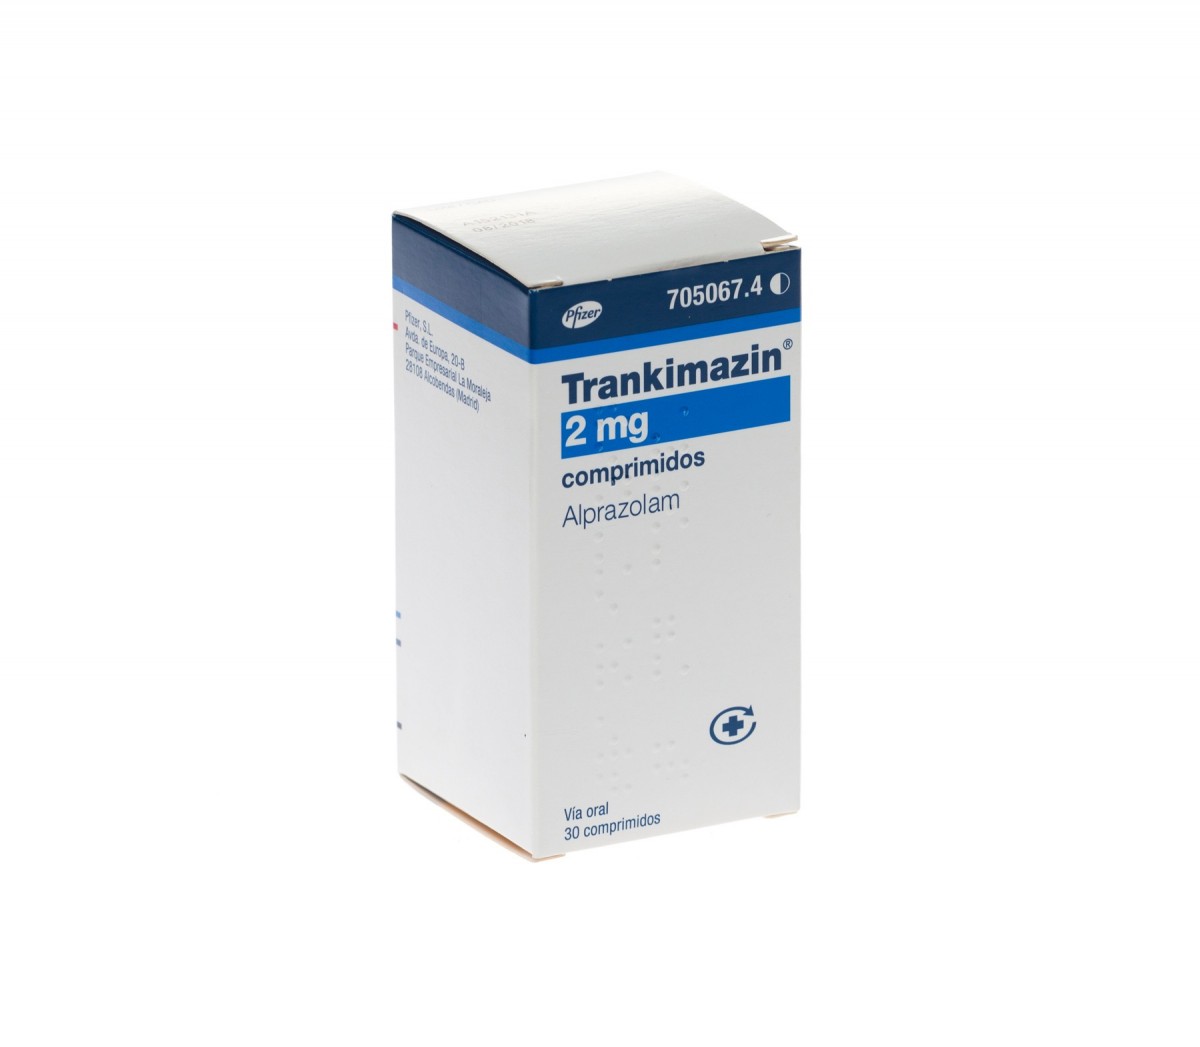 TRANKIMAZIN 2 mg COMPRIMIDOS , 50 comprimidos fotografía del envase.